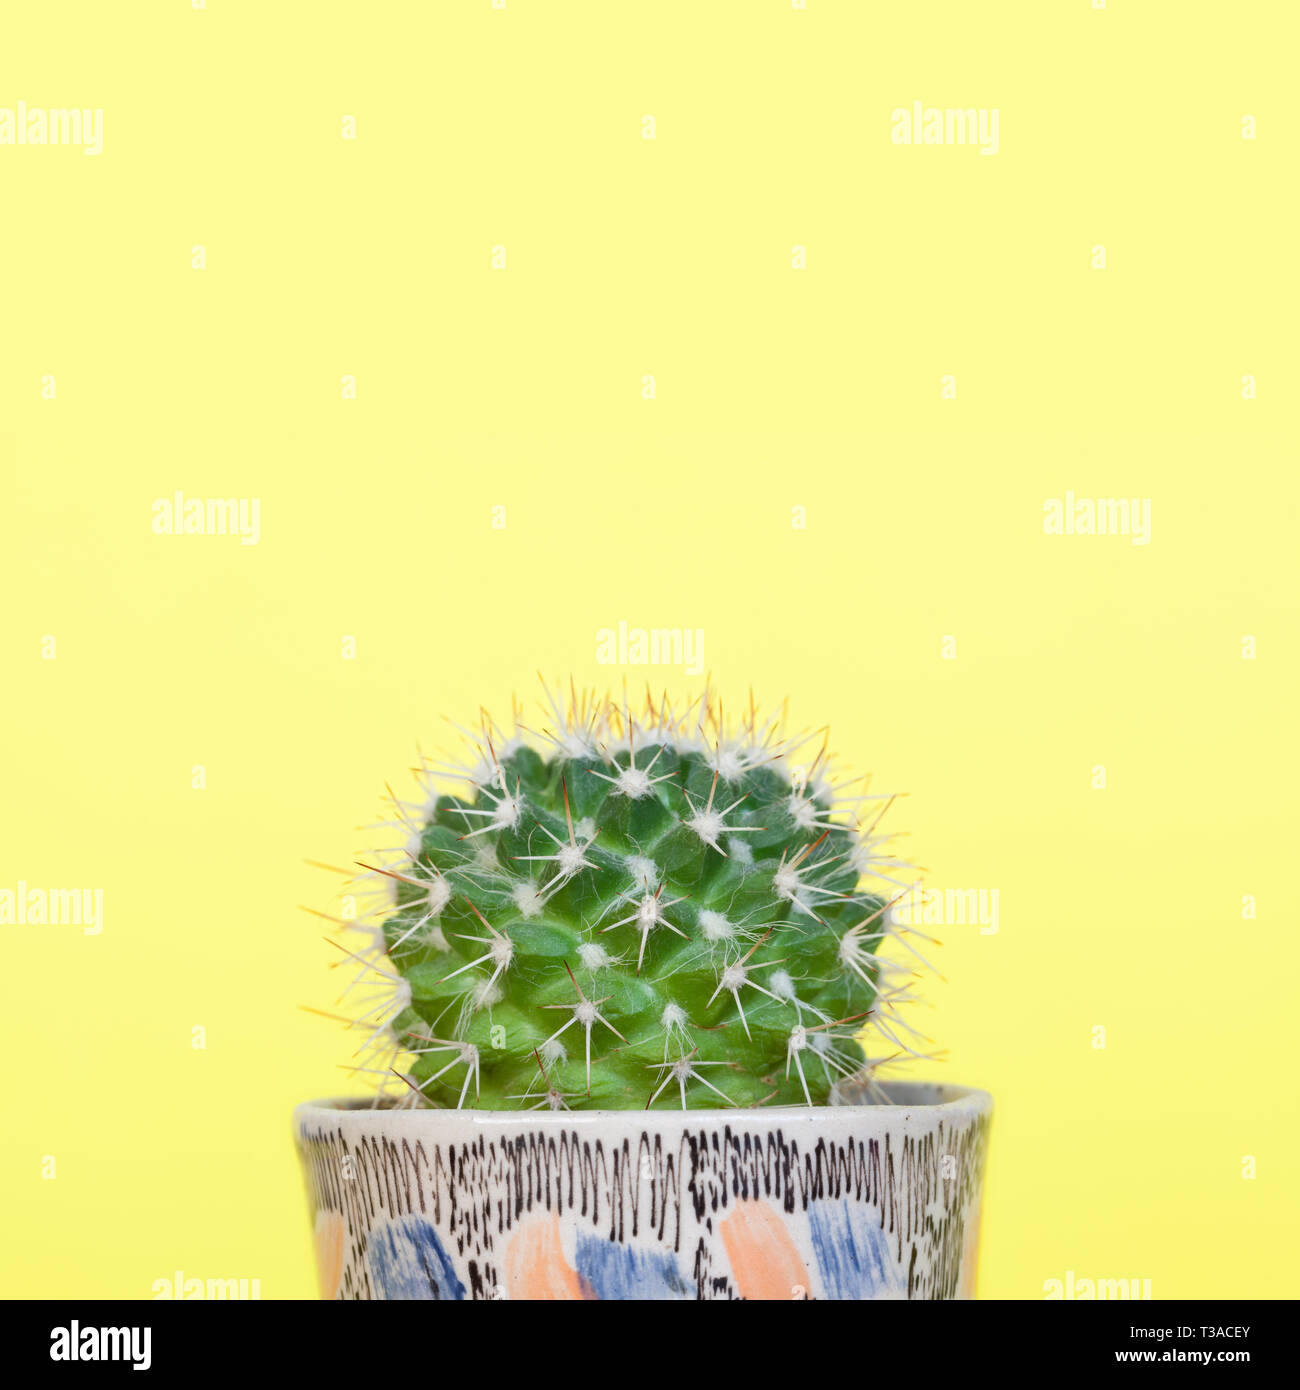 Small mammillaria cactus in a small decorative ceramic planter. Stock Photo